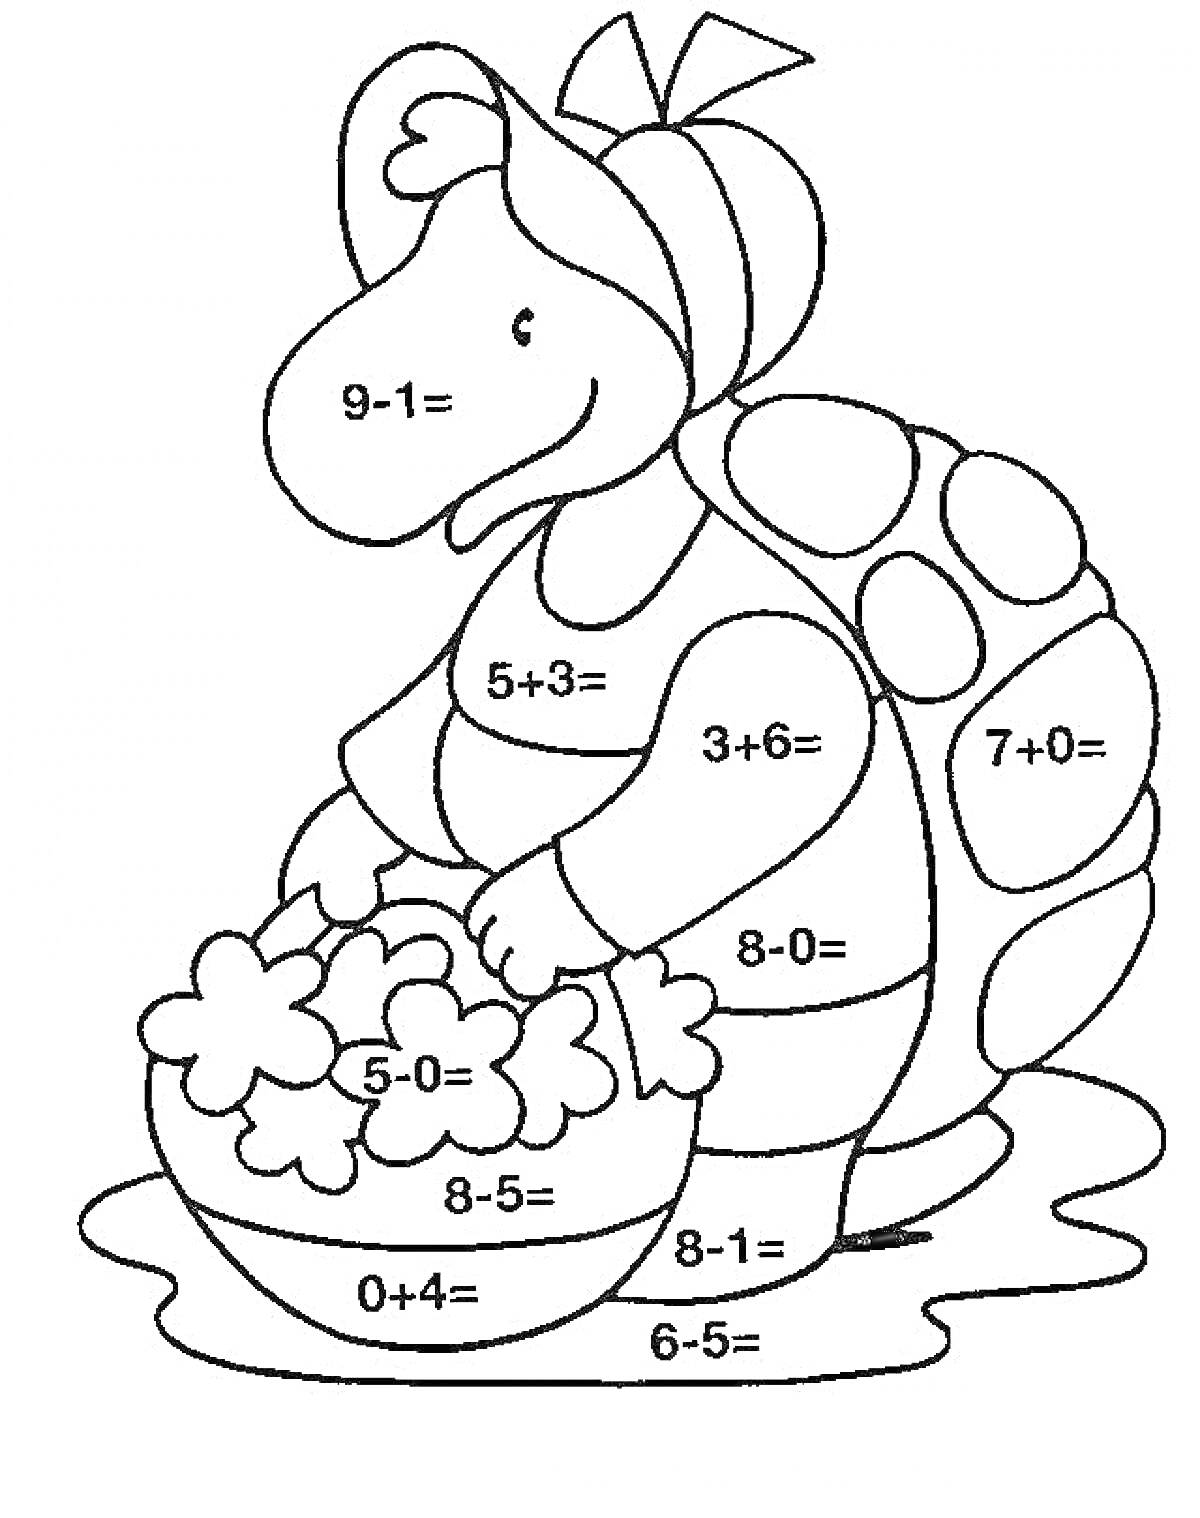 Черепаха с корзиной цветов с примерами арифметических заданий (добавление и вычитание)